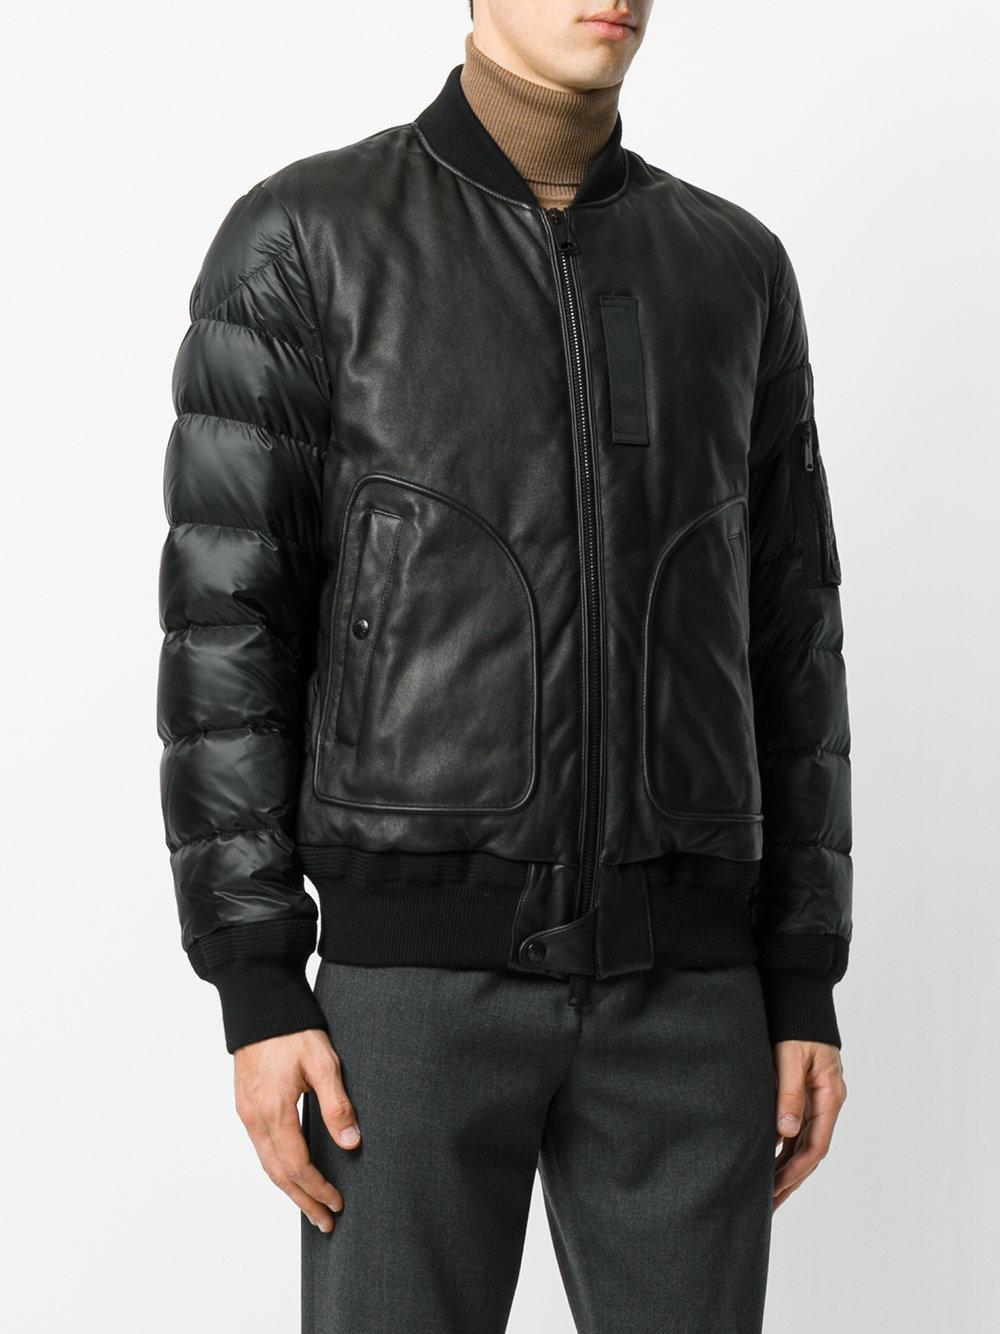 Moncler Leather Bomber Jacket in Black for Men - Lyst